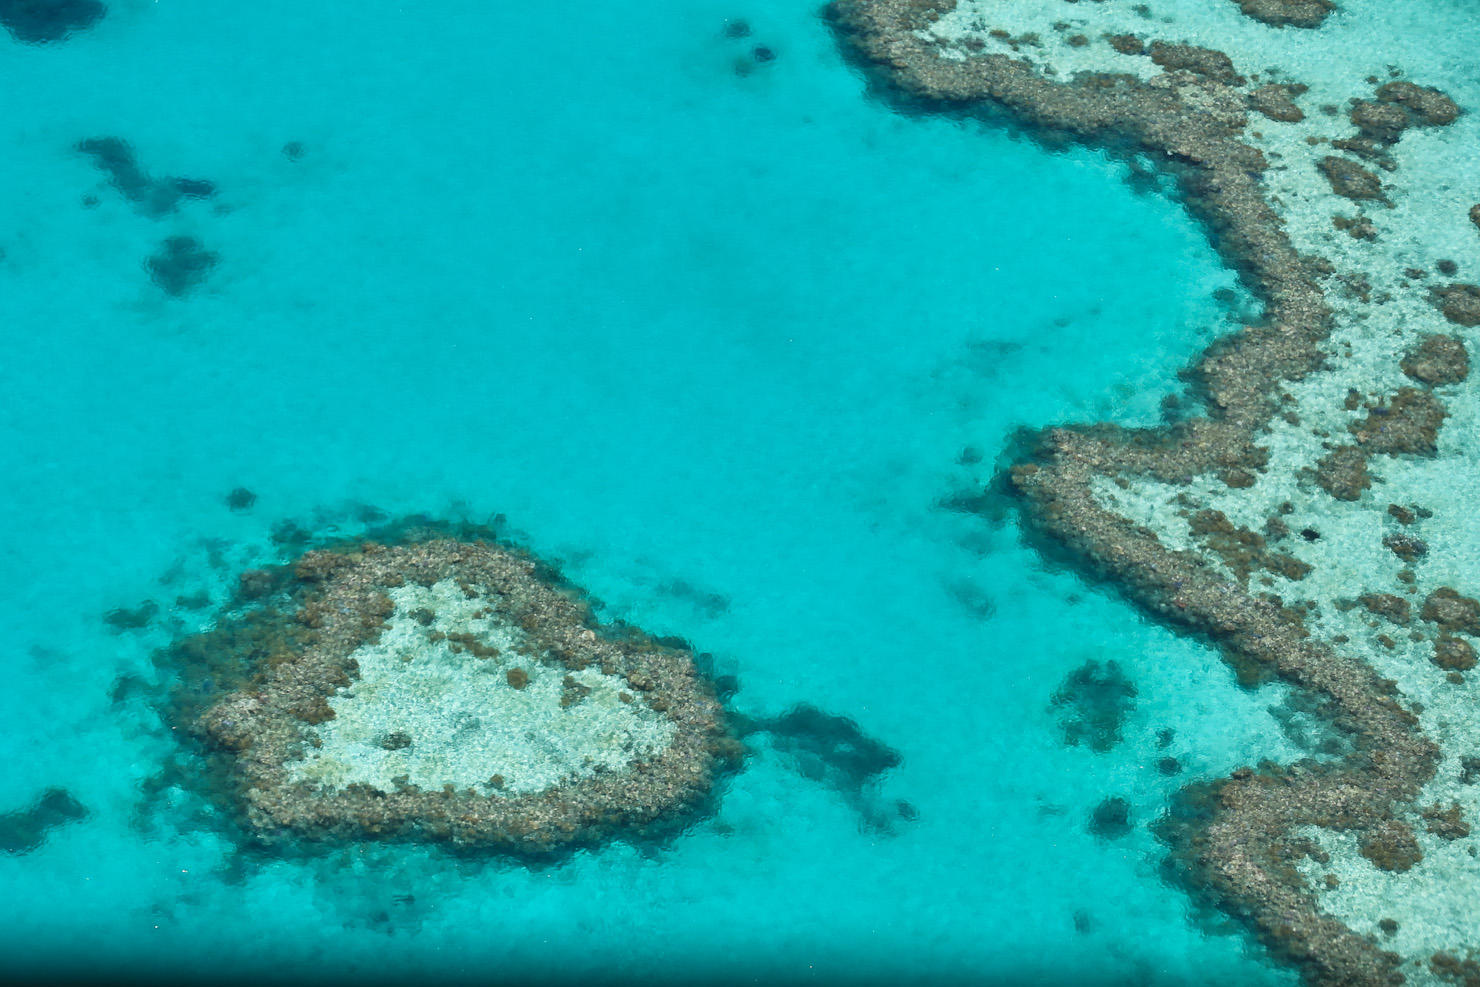 澳大利亚昆士兰州北部的凯恩斯是前往大堡礁的门户之一